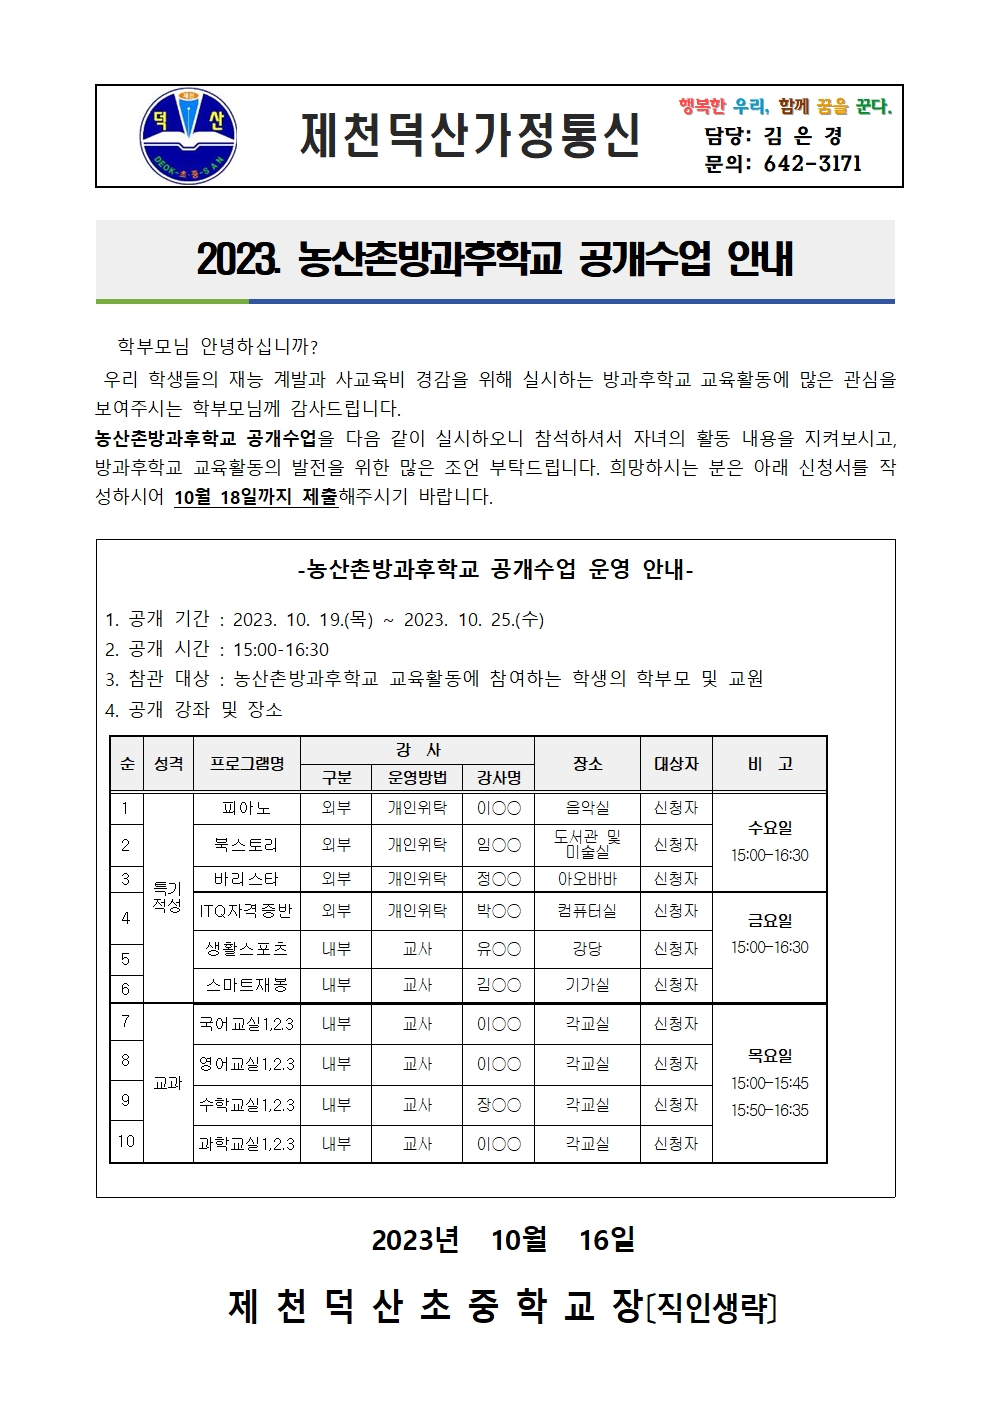 2023. 농산촌방과후학교 공개수업 가정통신문001